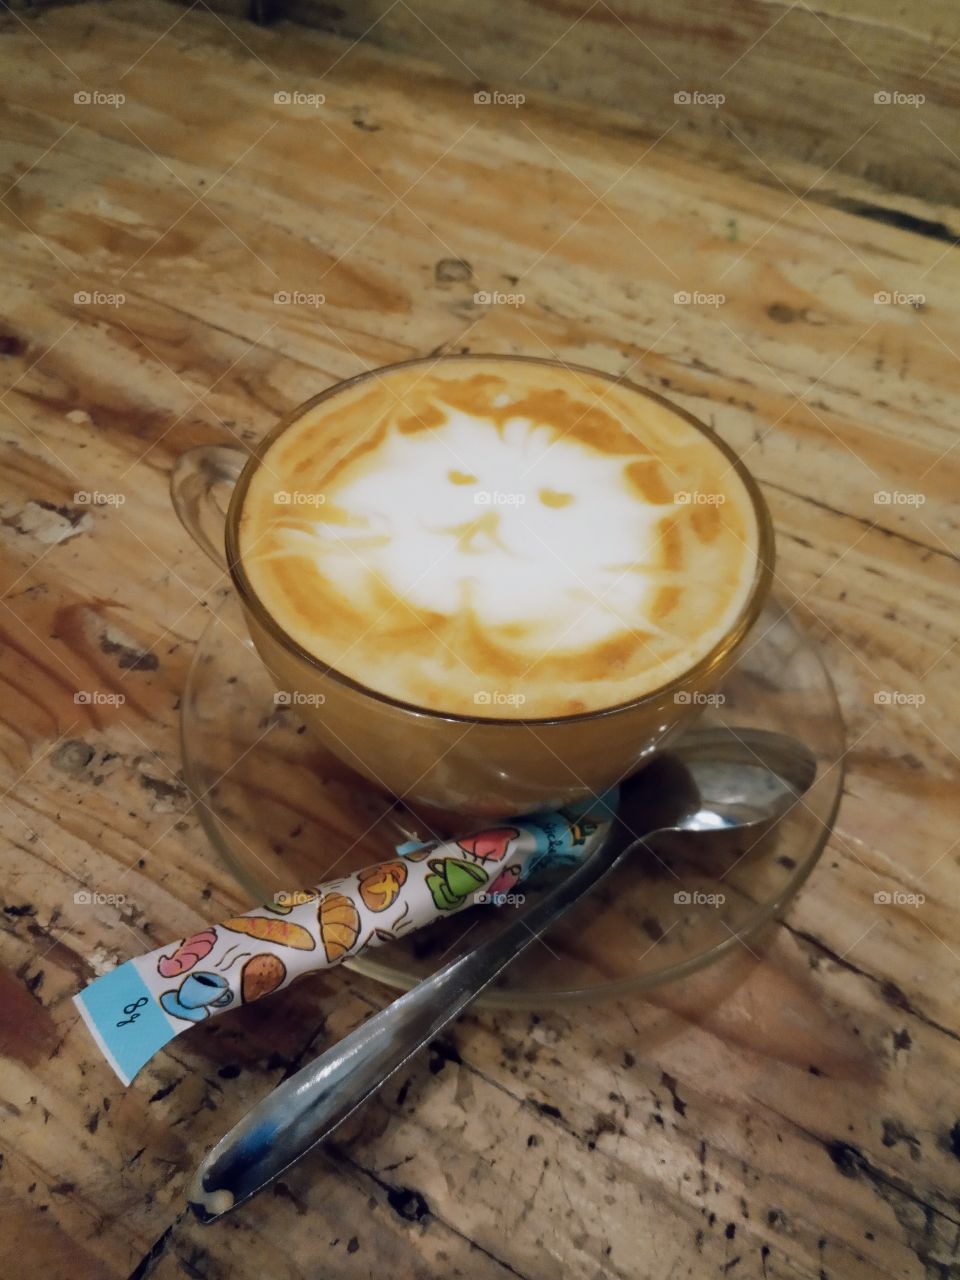 The latte art is so cute! 🐱🍼